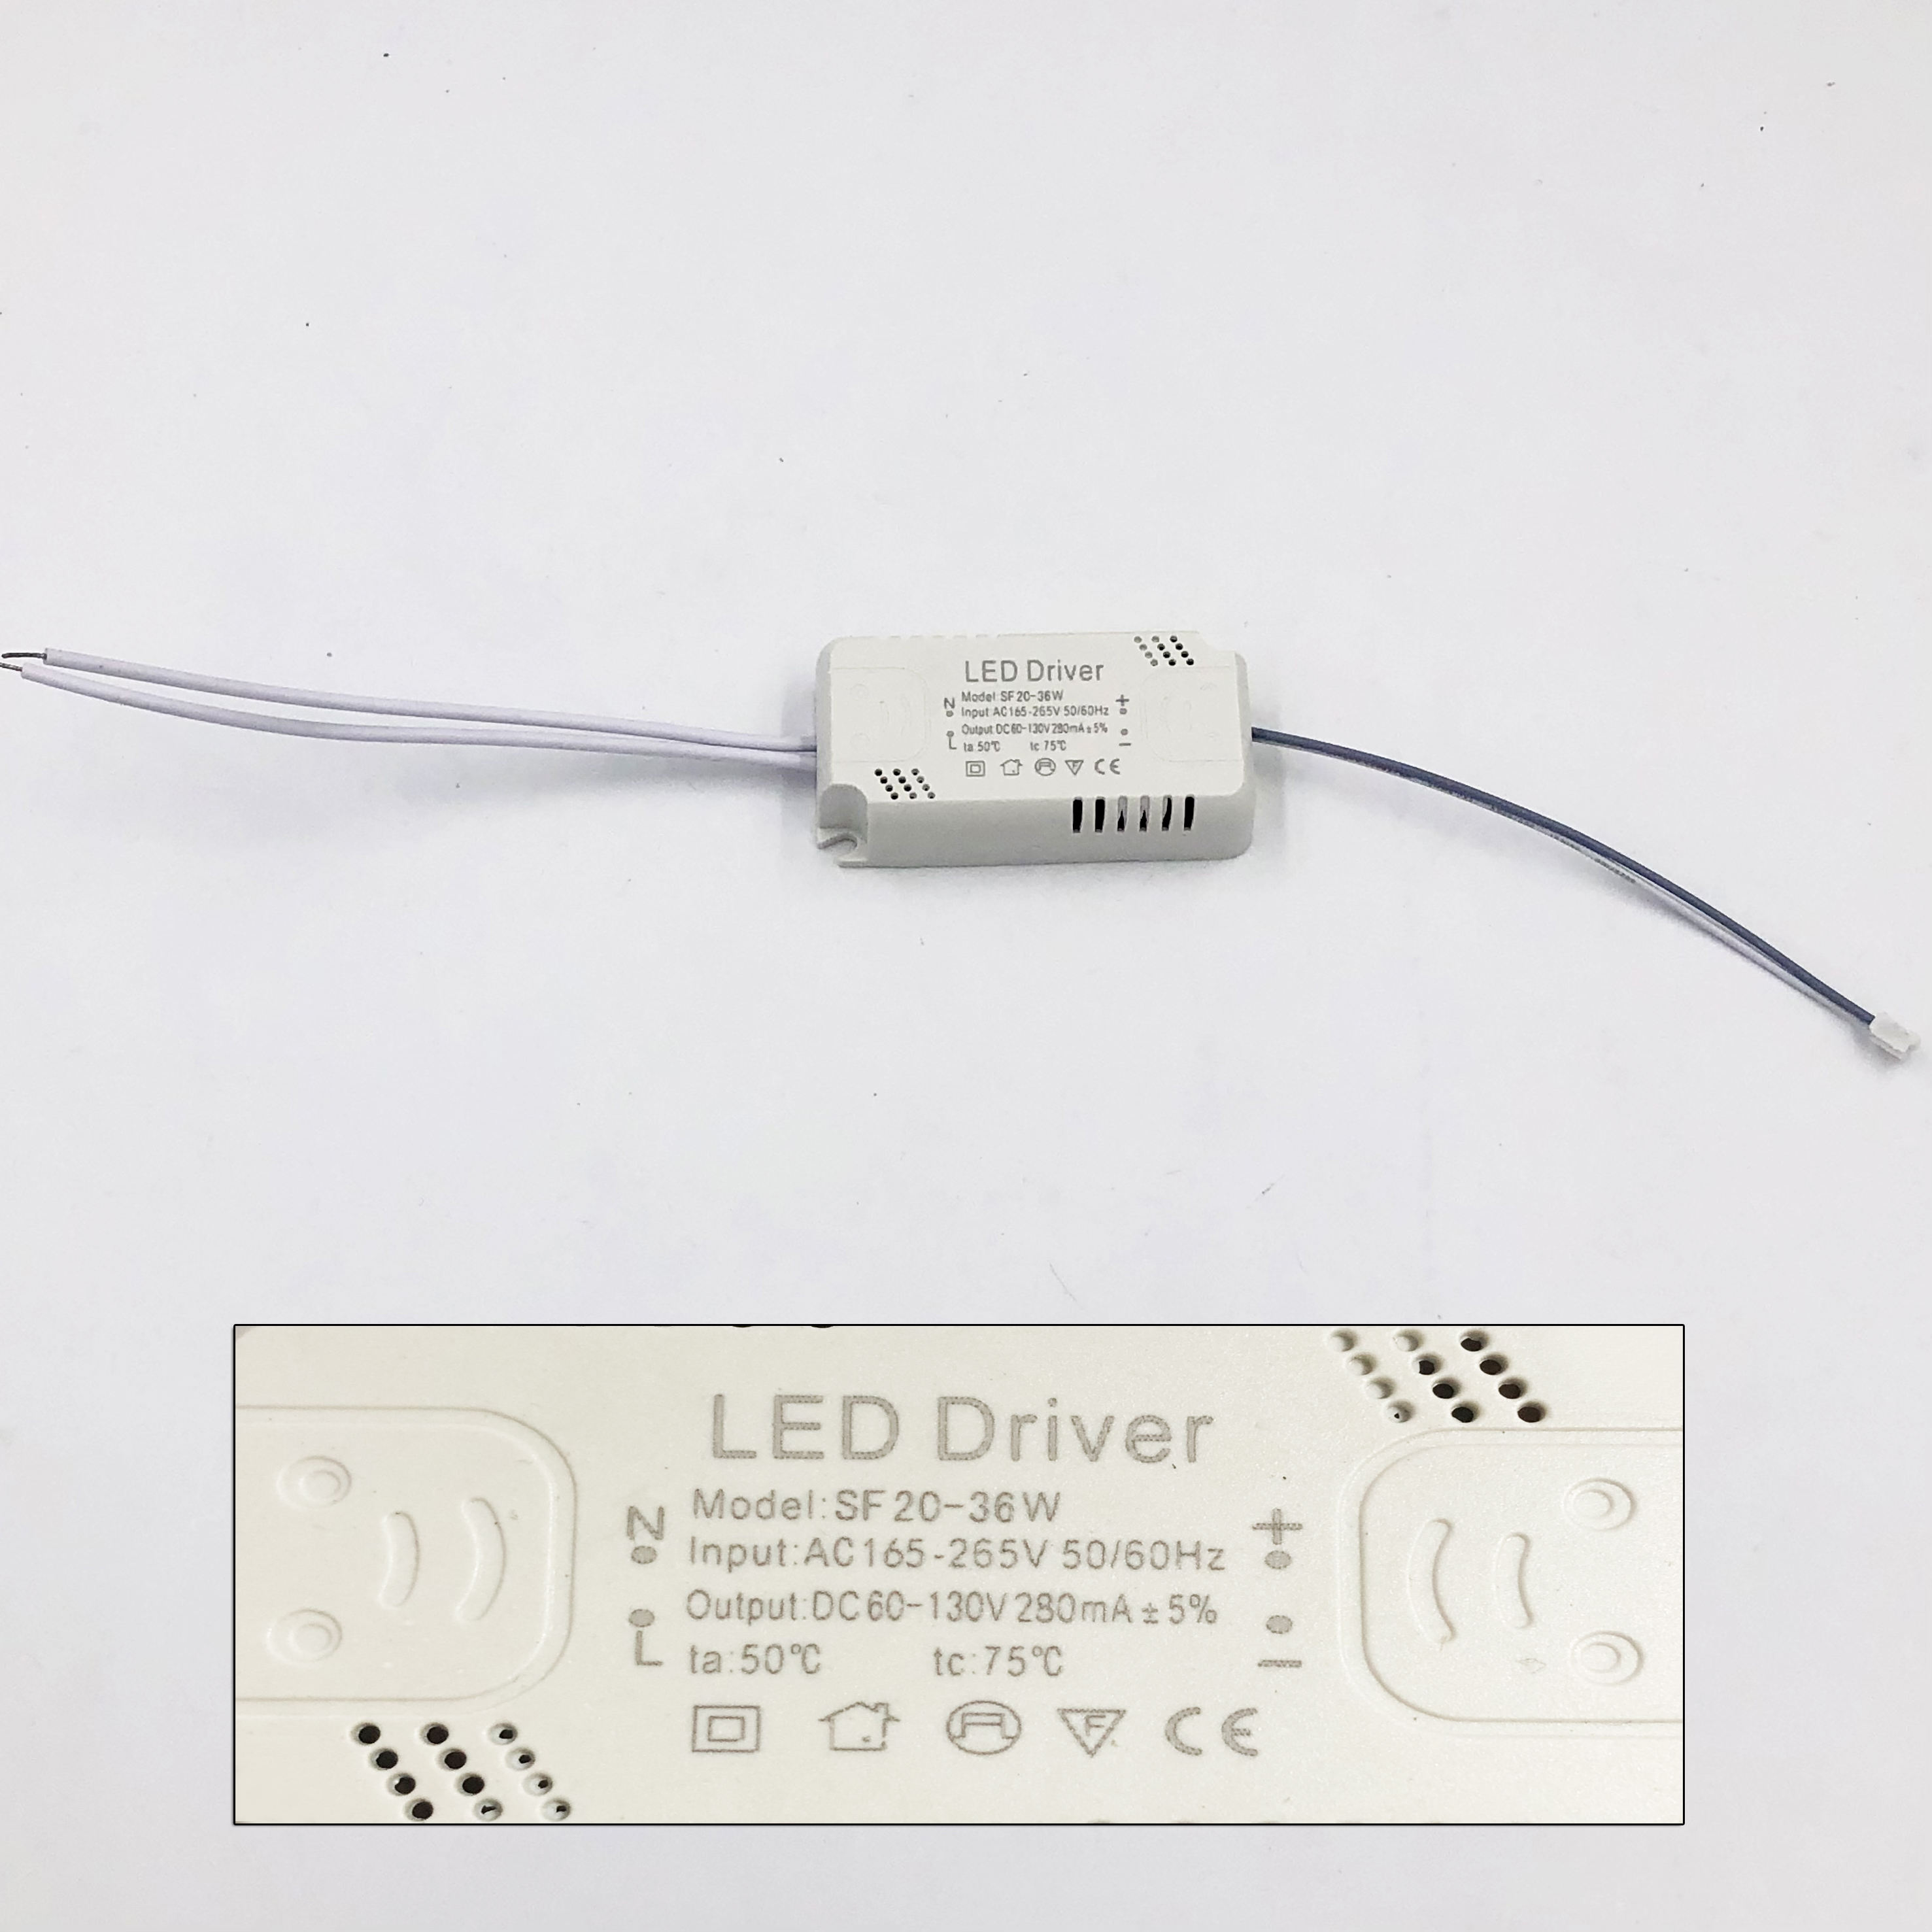 8-120W LED Driver Led Driver Power Supply Lighting Transformer Input AC175-265V Non-Isolating Lighting Transformer Luminaire Drive Power Supply Adapter for led Lamp